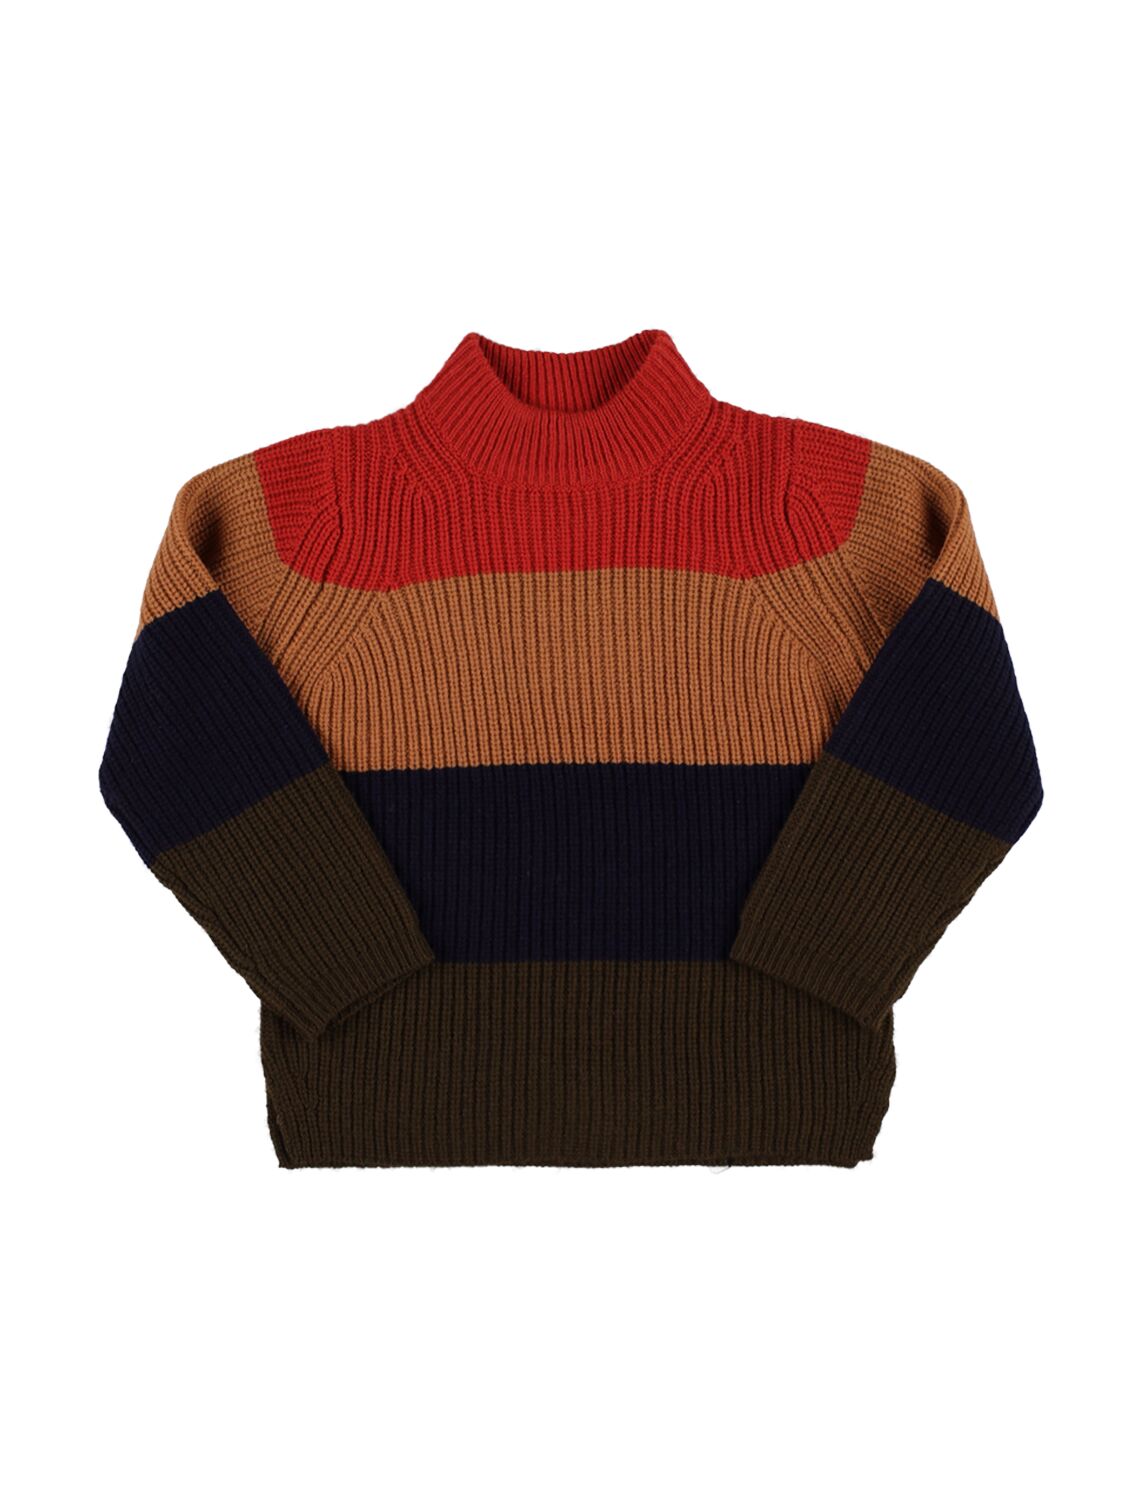 Liewood Kids' Striped Wool Knit Sweater In Multicolor